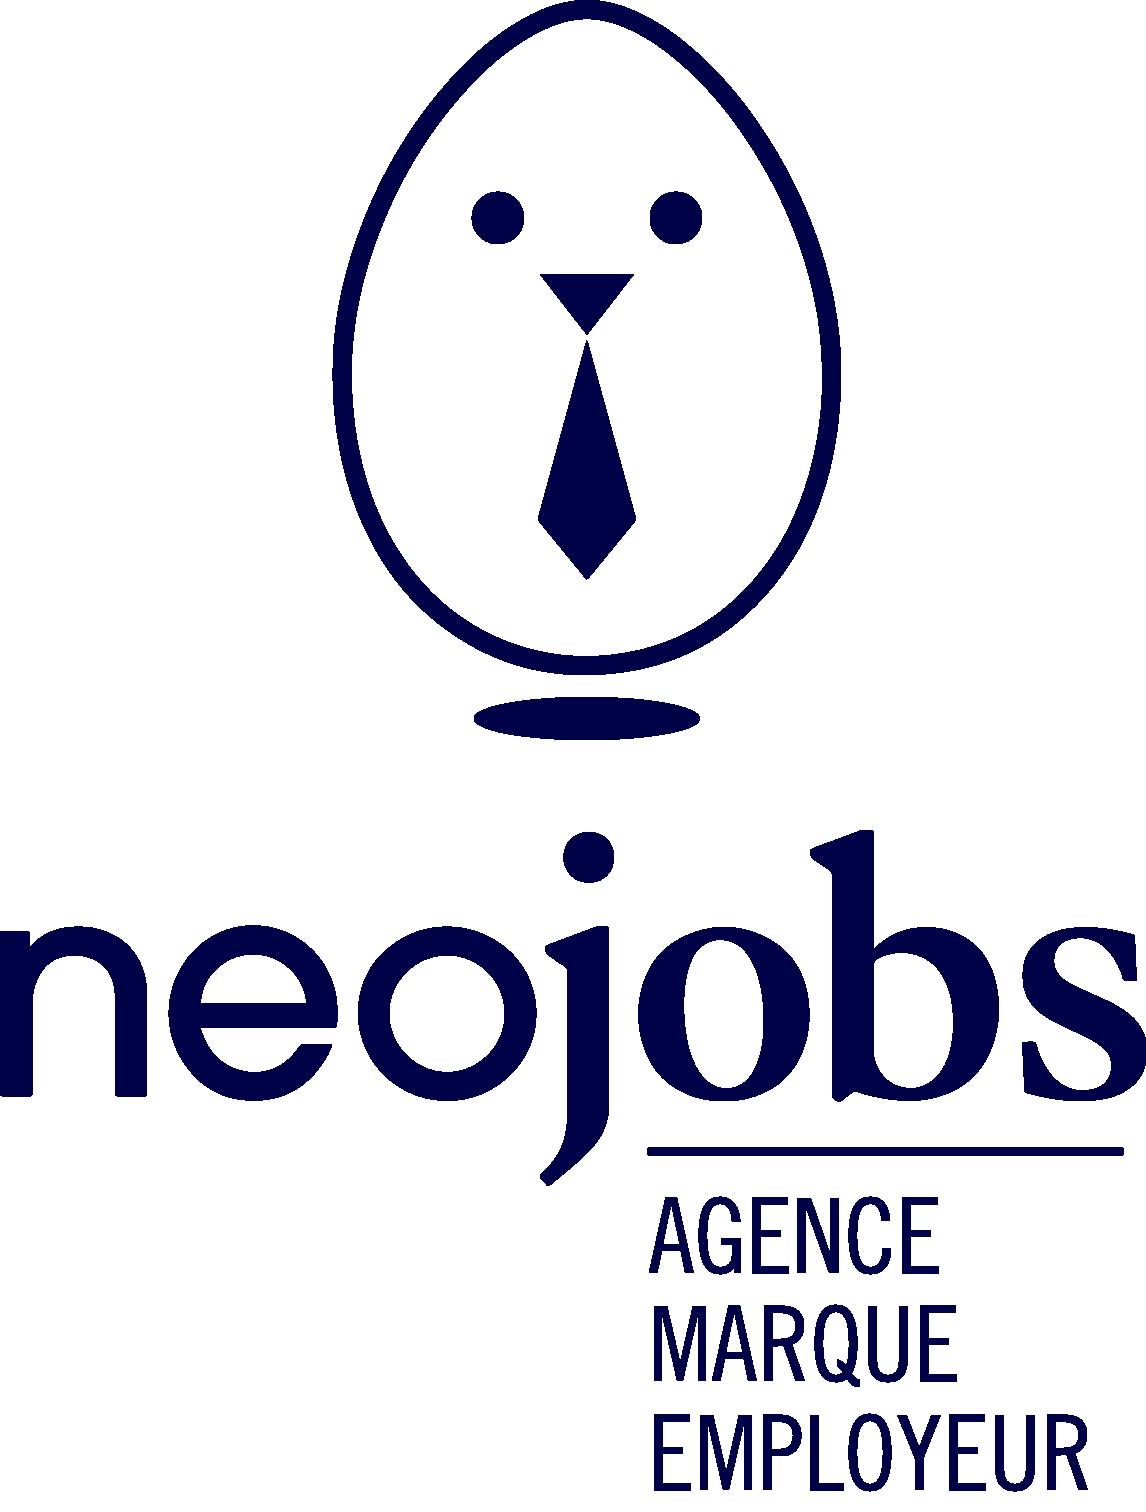 Logo Neojobs